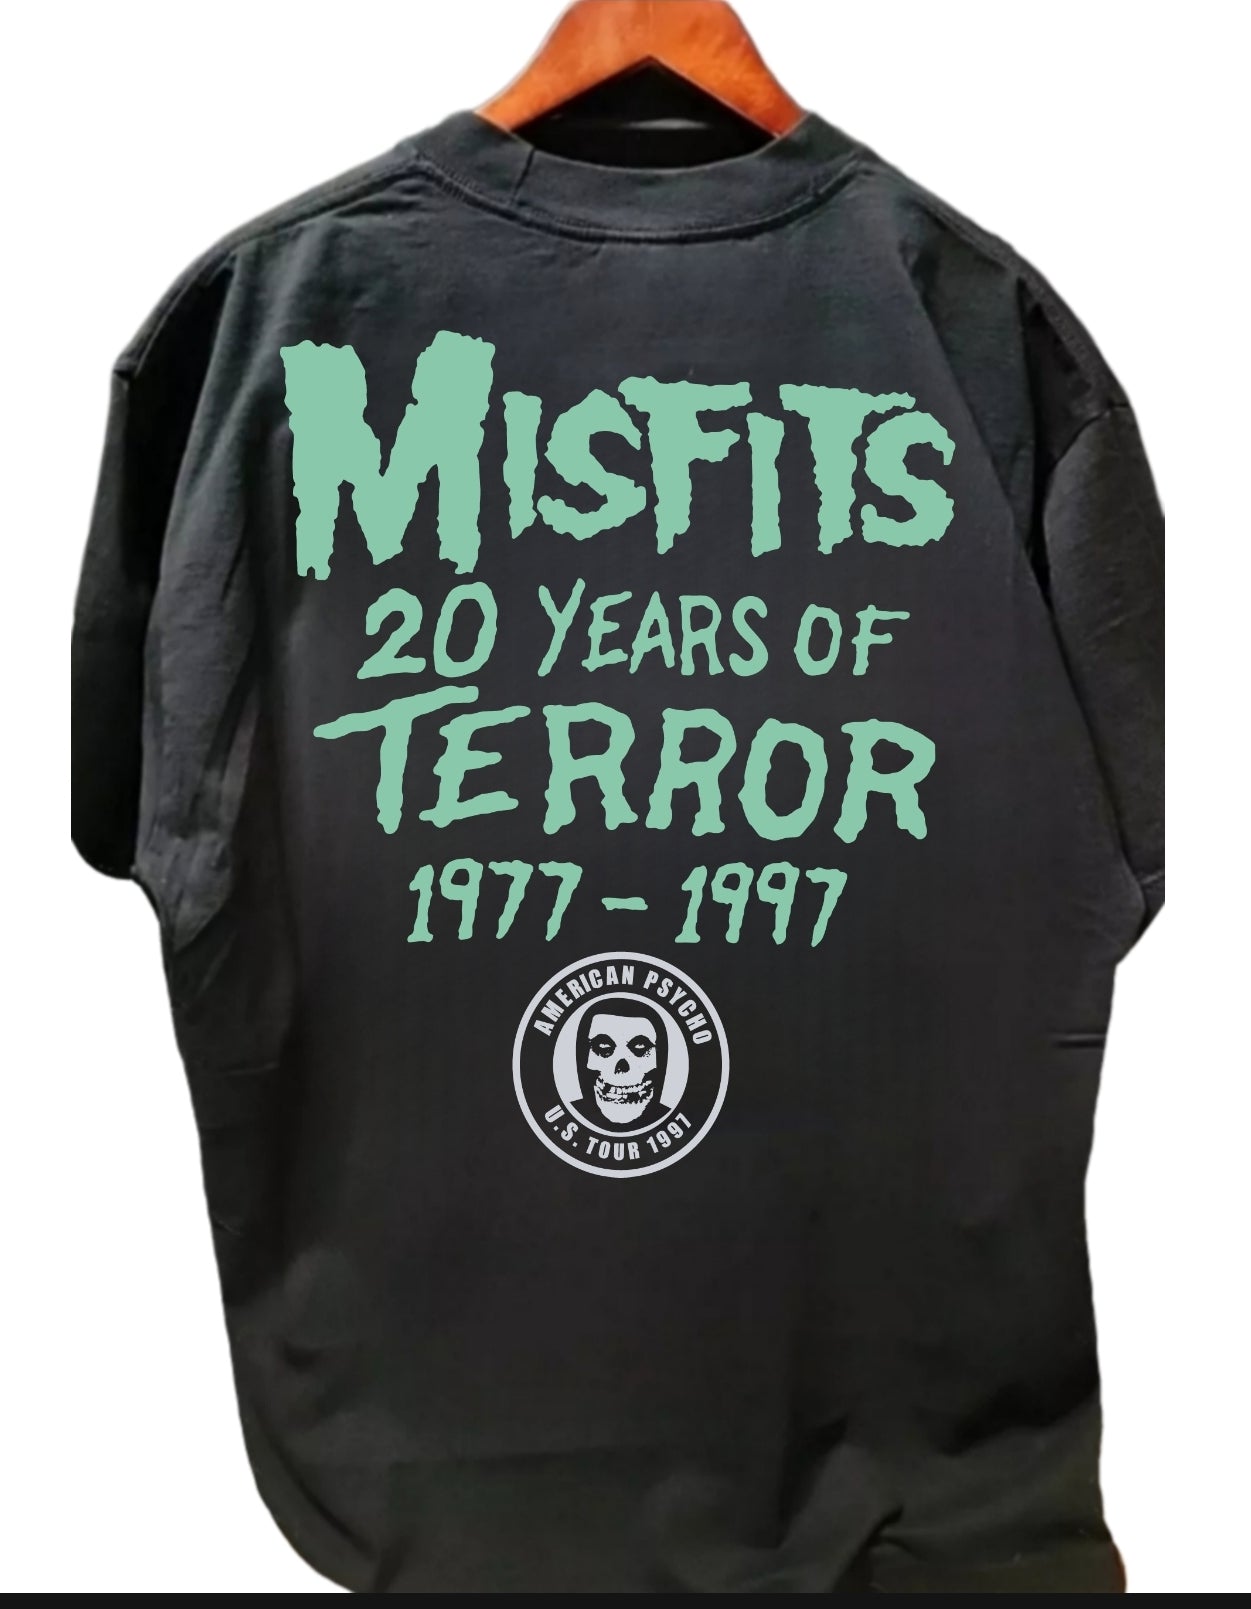 MISFITS 20 YEARS OF TERROR "MODERN "